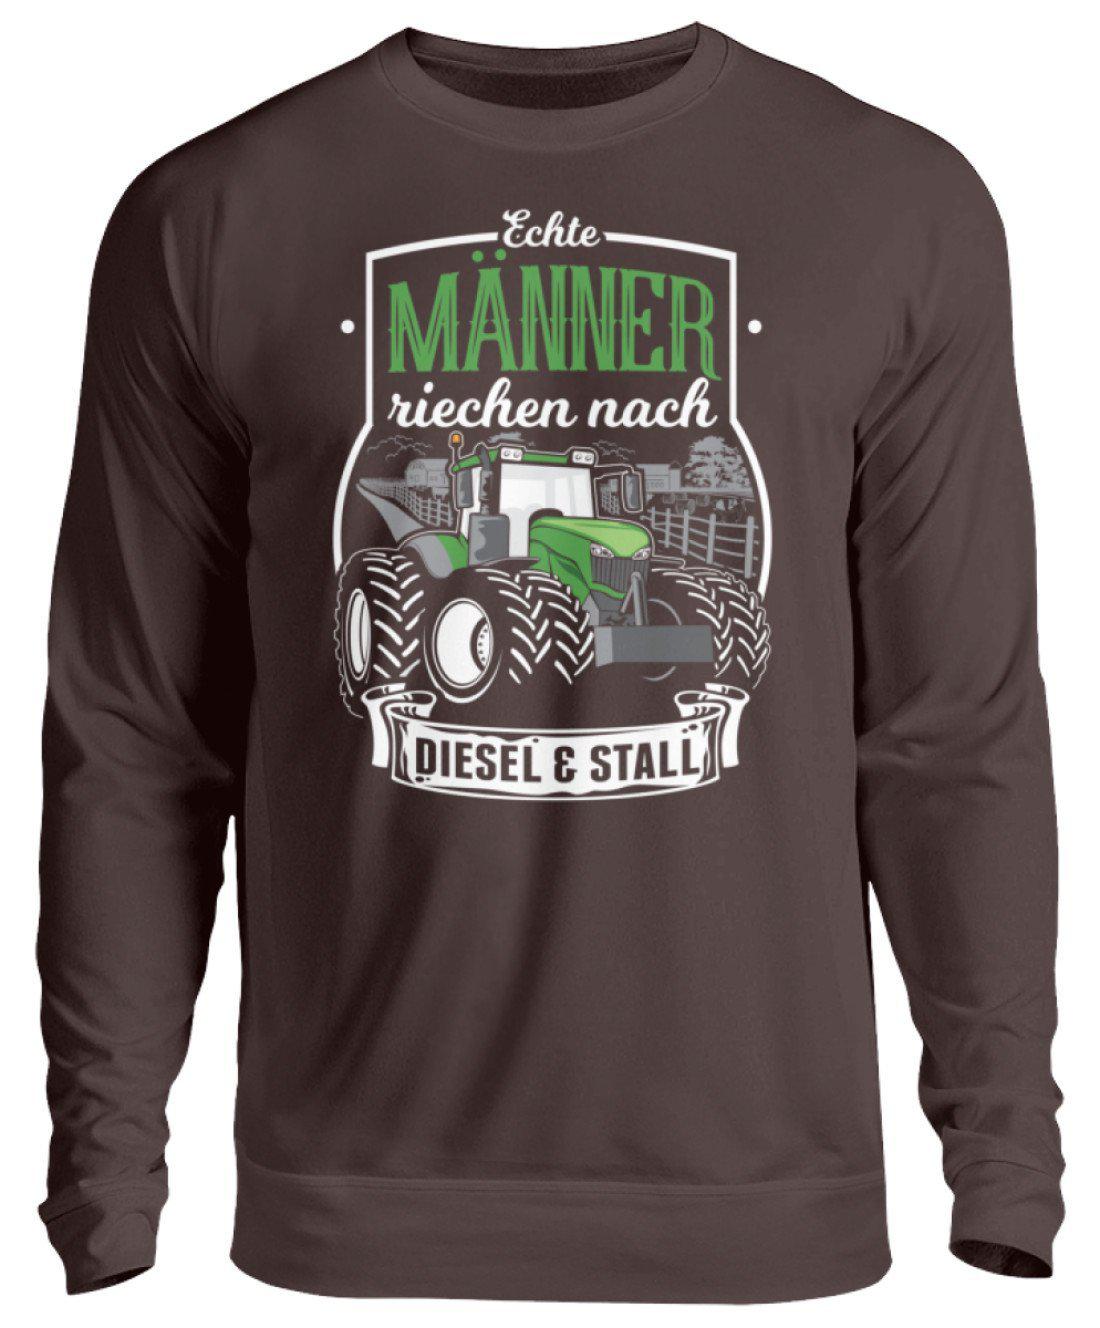 Männer Diesel und Stall · Unisex Sweatshirt Pullover-Unisex Sweatshirt-Hot Chocolate-S-Agrarstarz